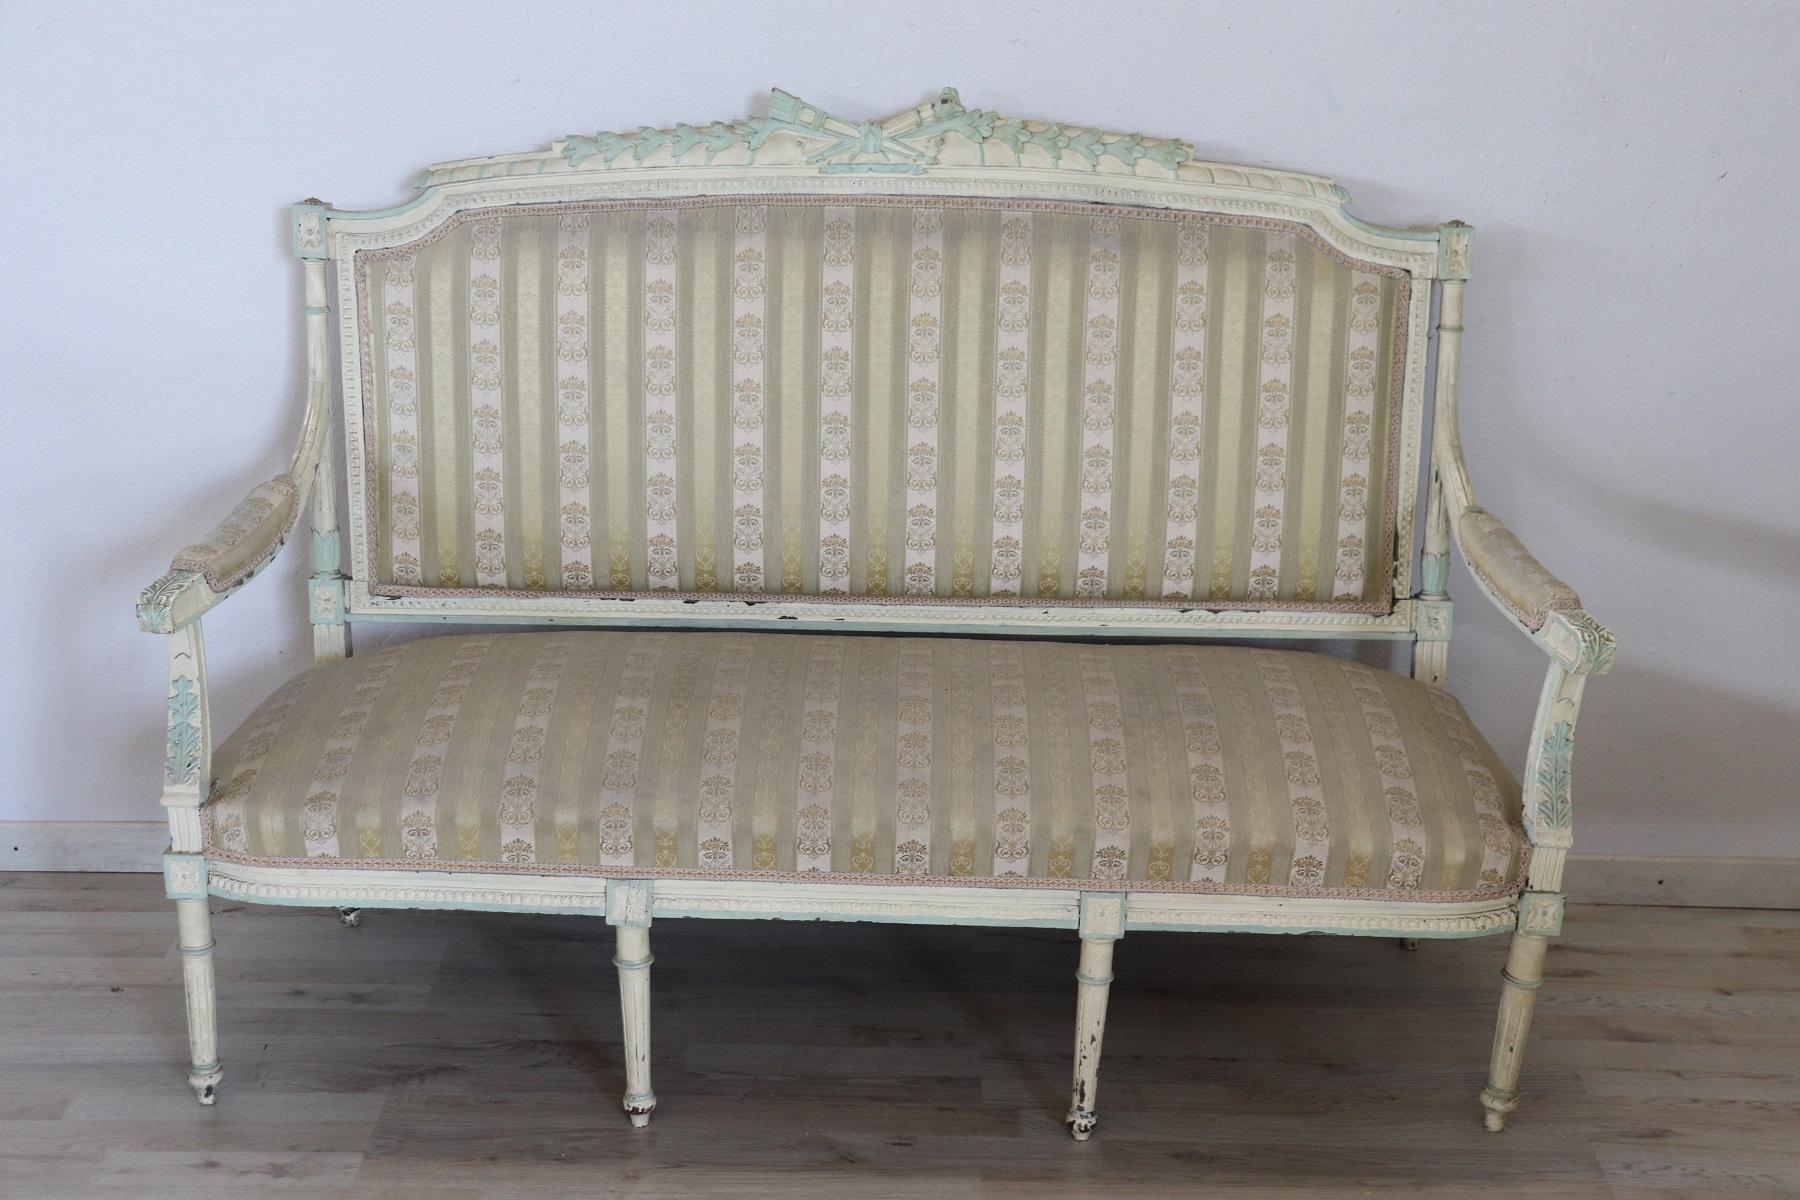 Seltene komplette italienische Luxus-Louis XVI-Stil Wohnzimmer-Set umfasst:
1 großes Sofa
2 Sessel
4 Stühle
Raffinierte Wohnzimmereinrichtung aus lackiertem Holz. Das Wohnzimmer stammt aus einer bedeutenden italienischen Villa und schmückte den